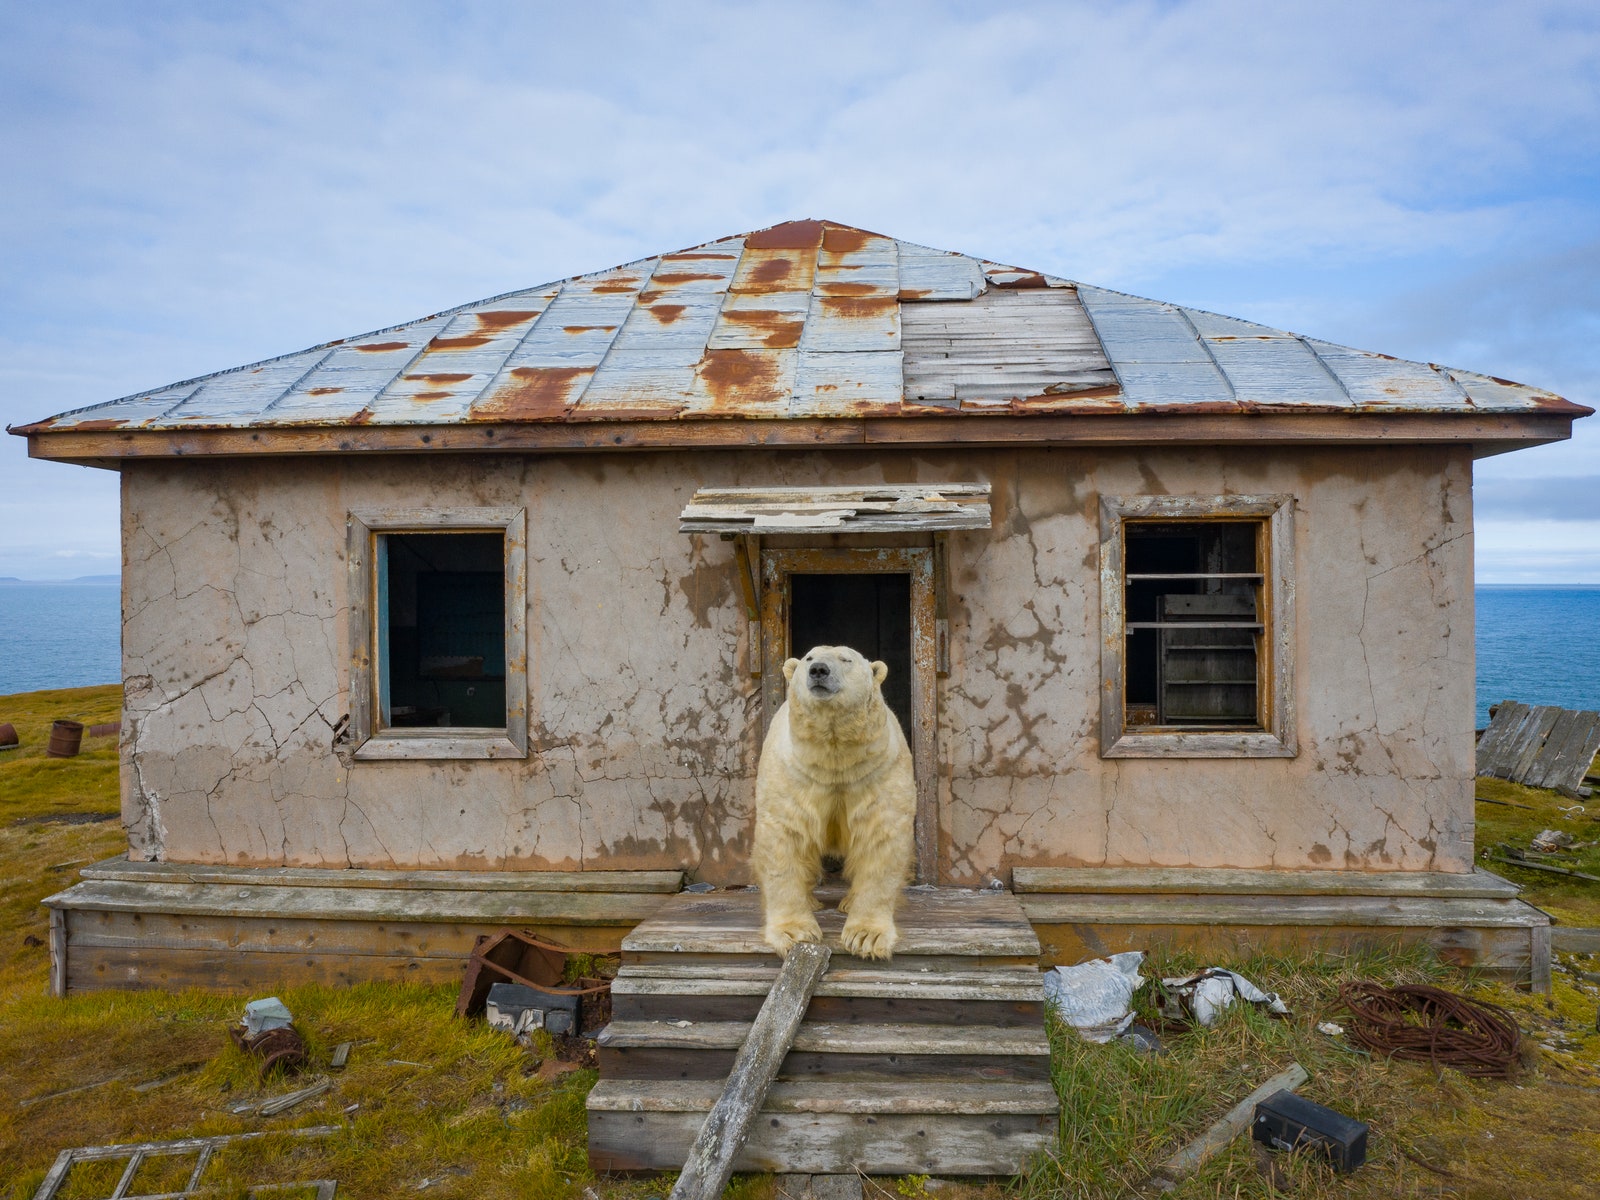 “Дом медведей”: фотопроект Дмитрия Коха на острове Колючин